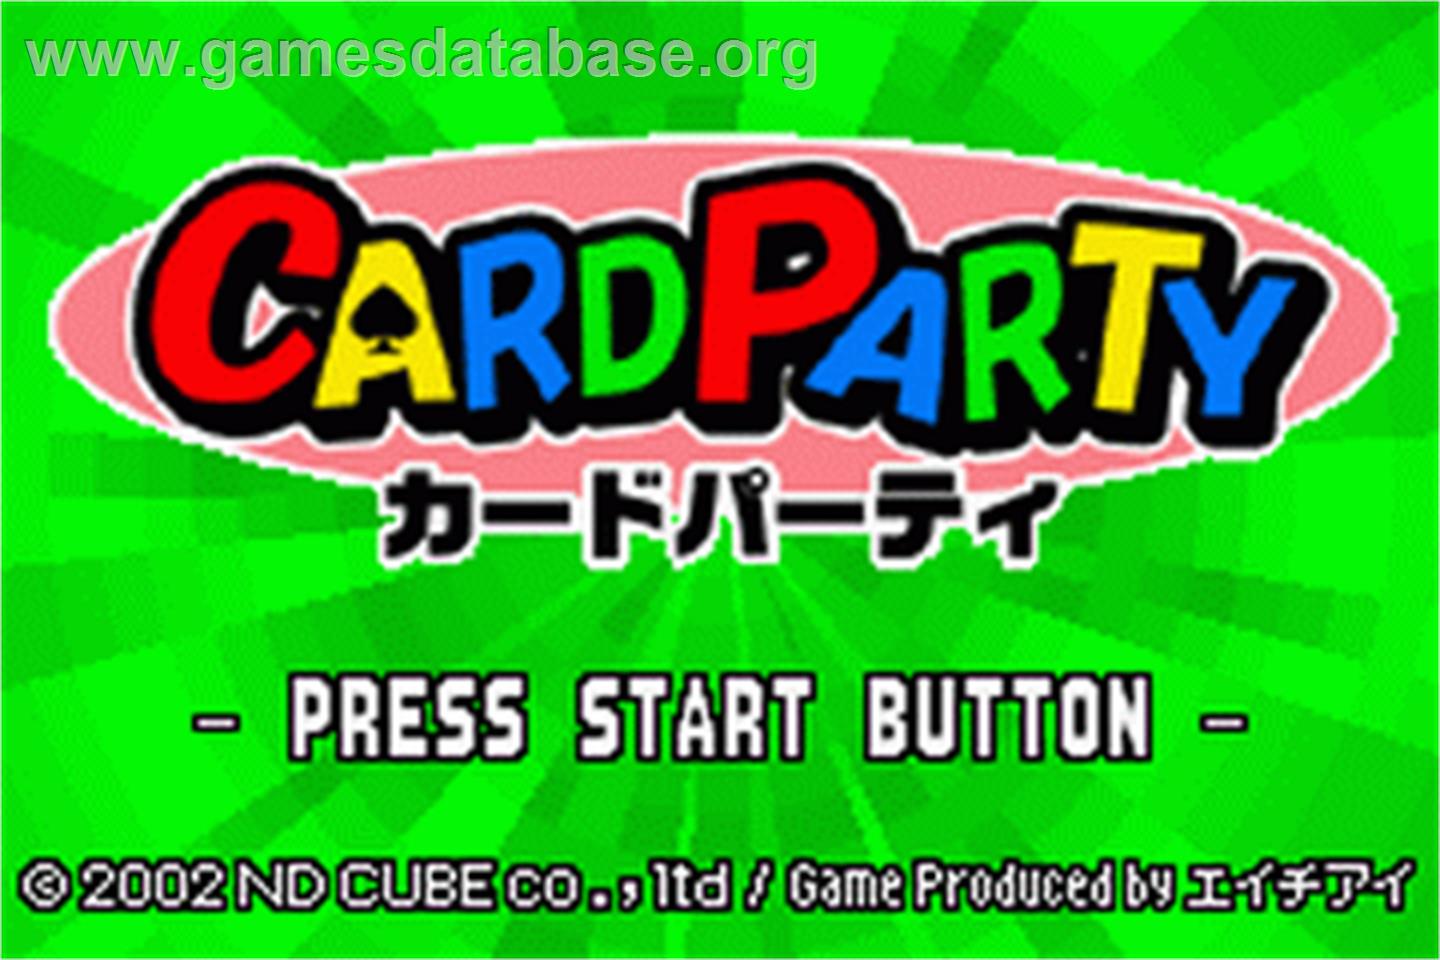 Mario Party-e - Nintendo Game Boy Advance - Artwork - Title Screen